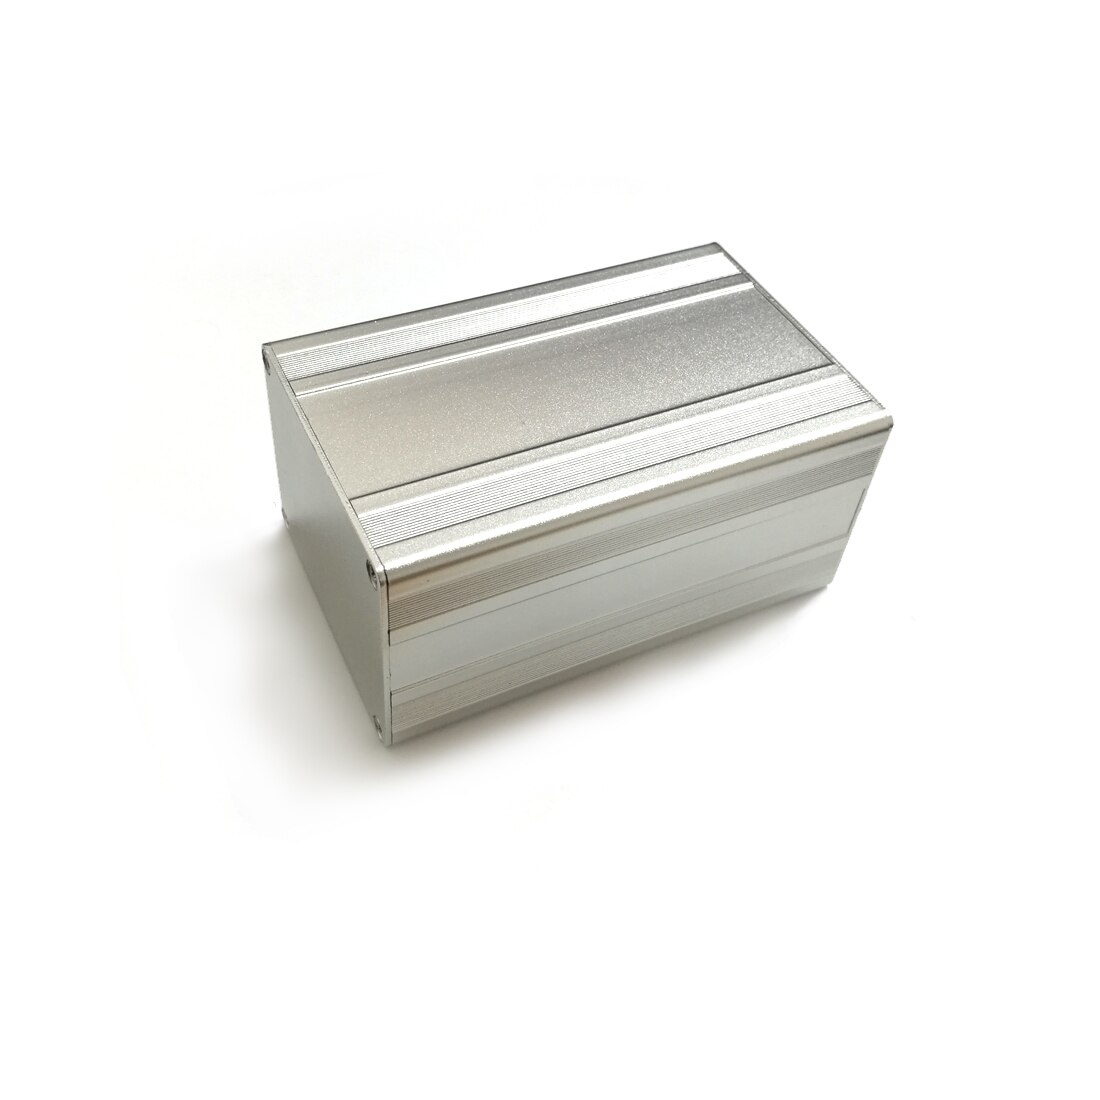 65*50*100mm Aluminum Enclosure PCB Instrument Case Electronics Enclosure Box Desktop DIY